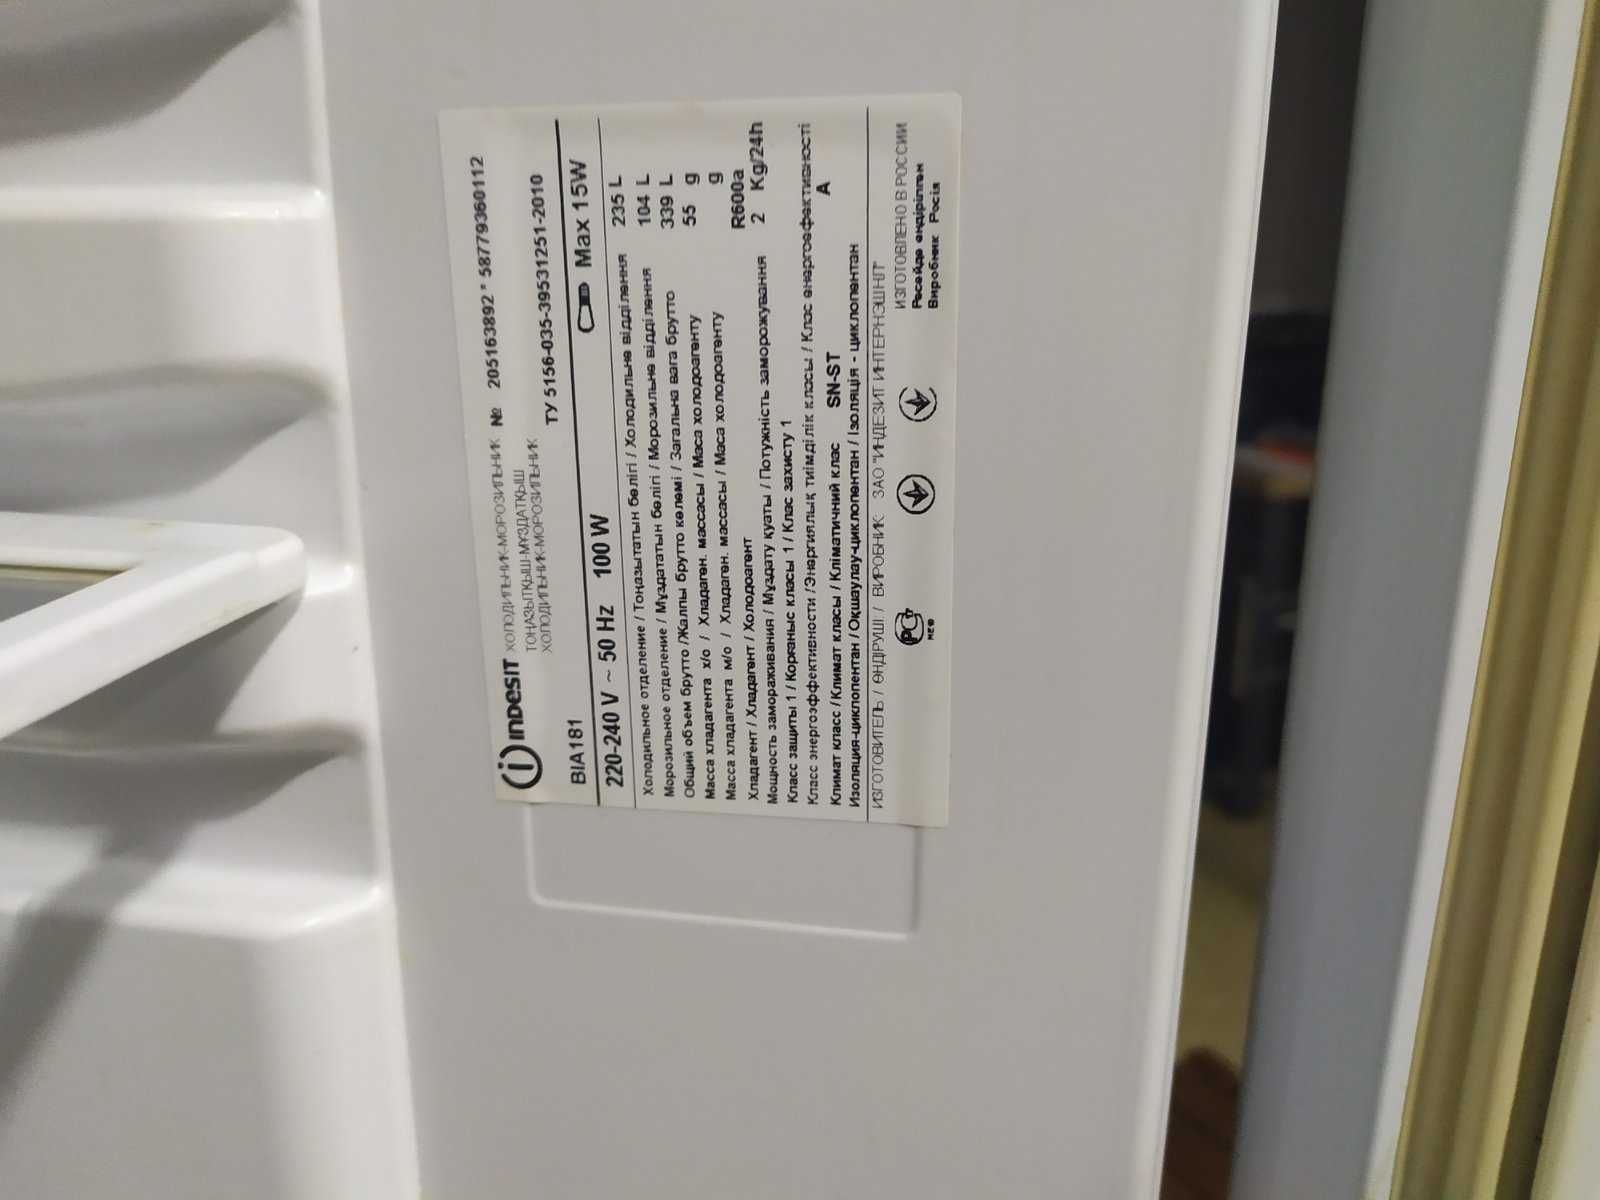 двухкамерный холодильник  Indesit BIA 181